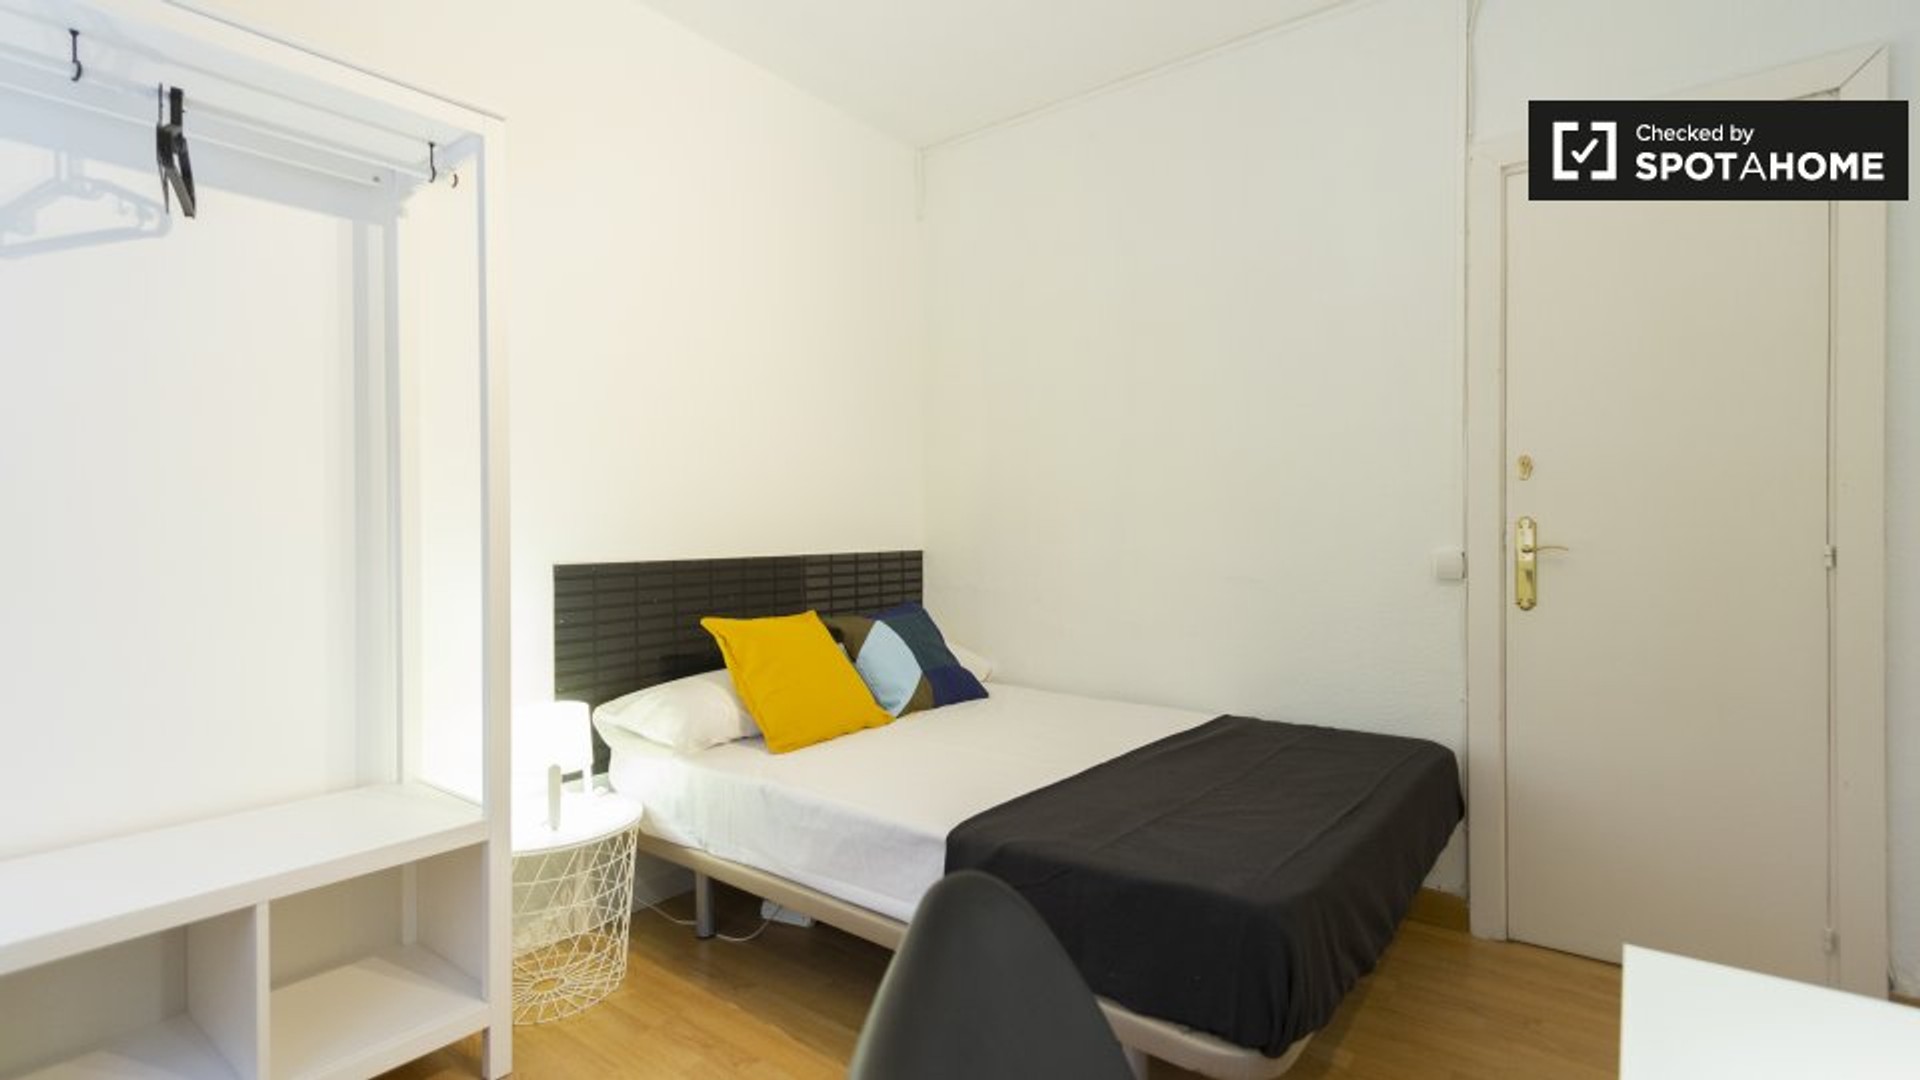 Pokój do wynajęcia z podwójnym łóżkiem w Madryt